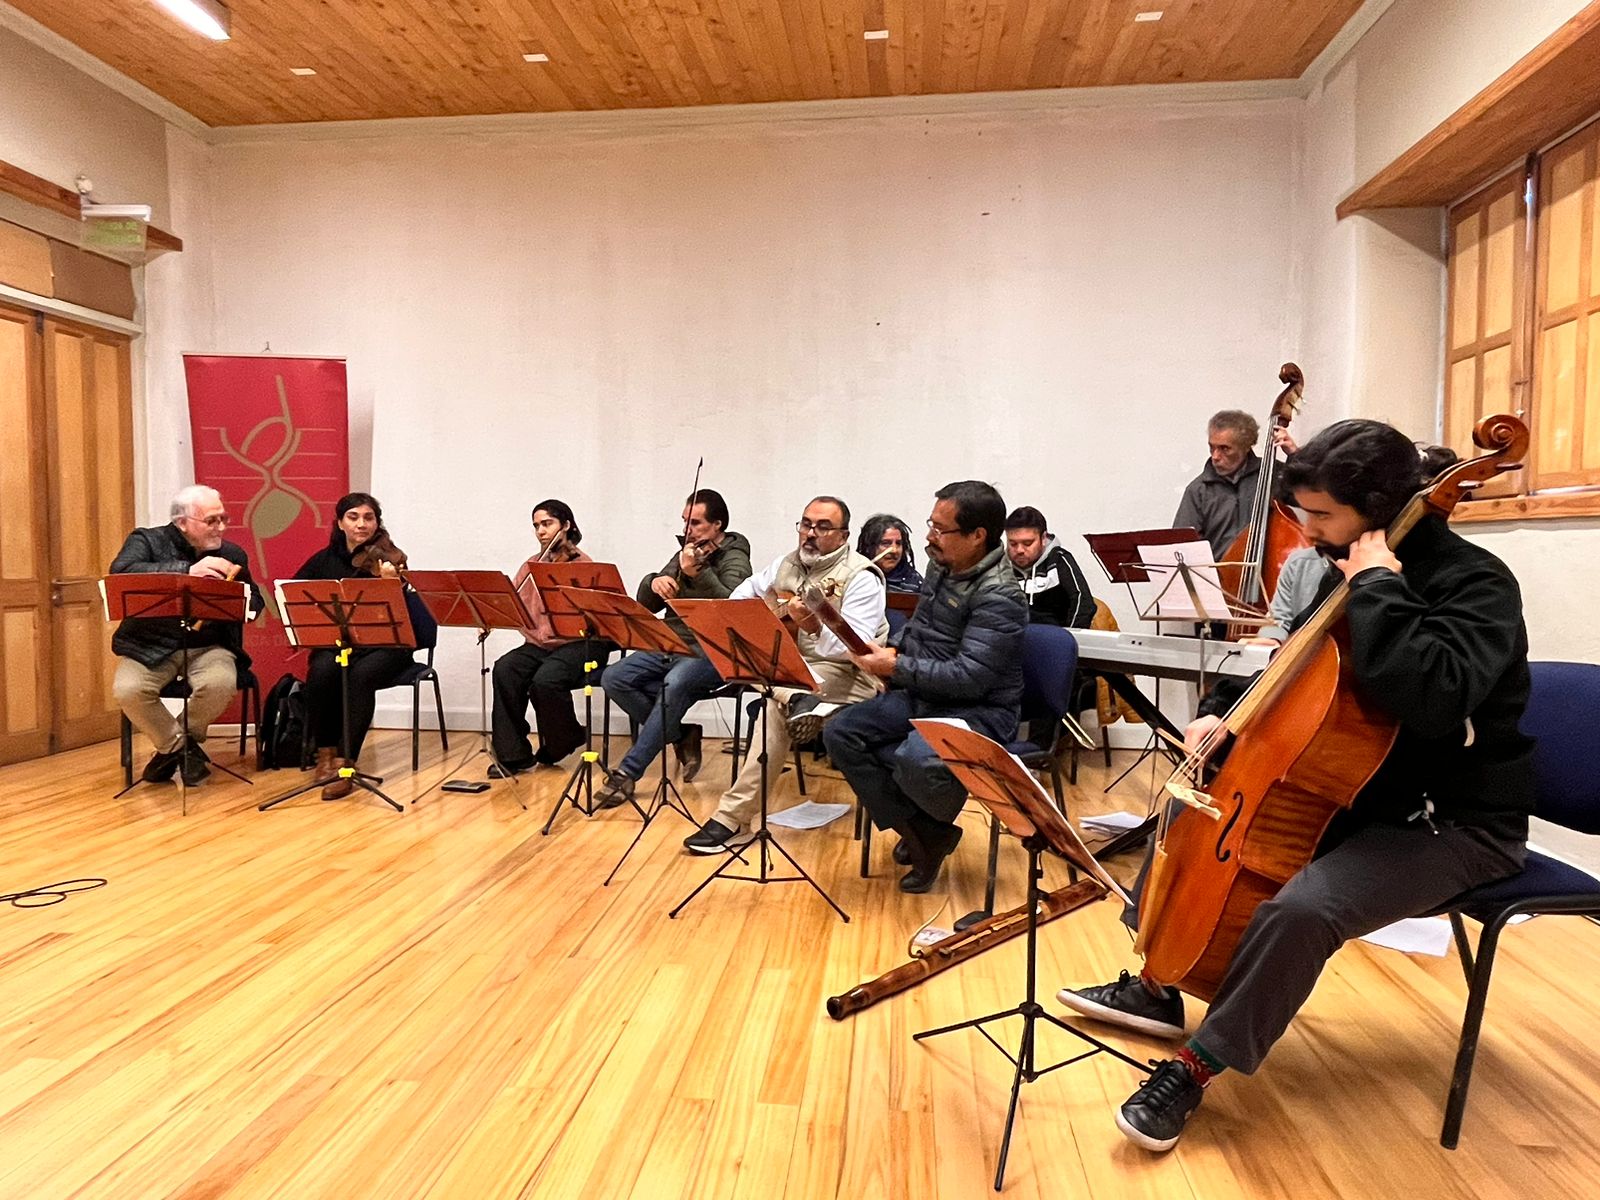 CALLE LARGA: Orquesta Mundos Reunidos deleitó a Calle Larga con su repertorio de música barroca